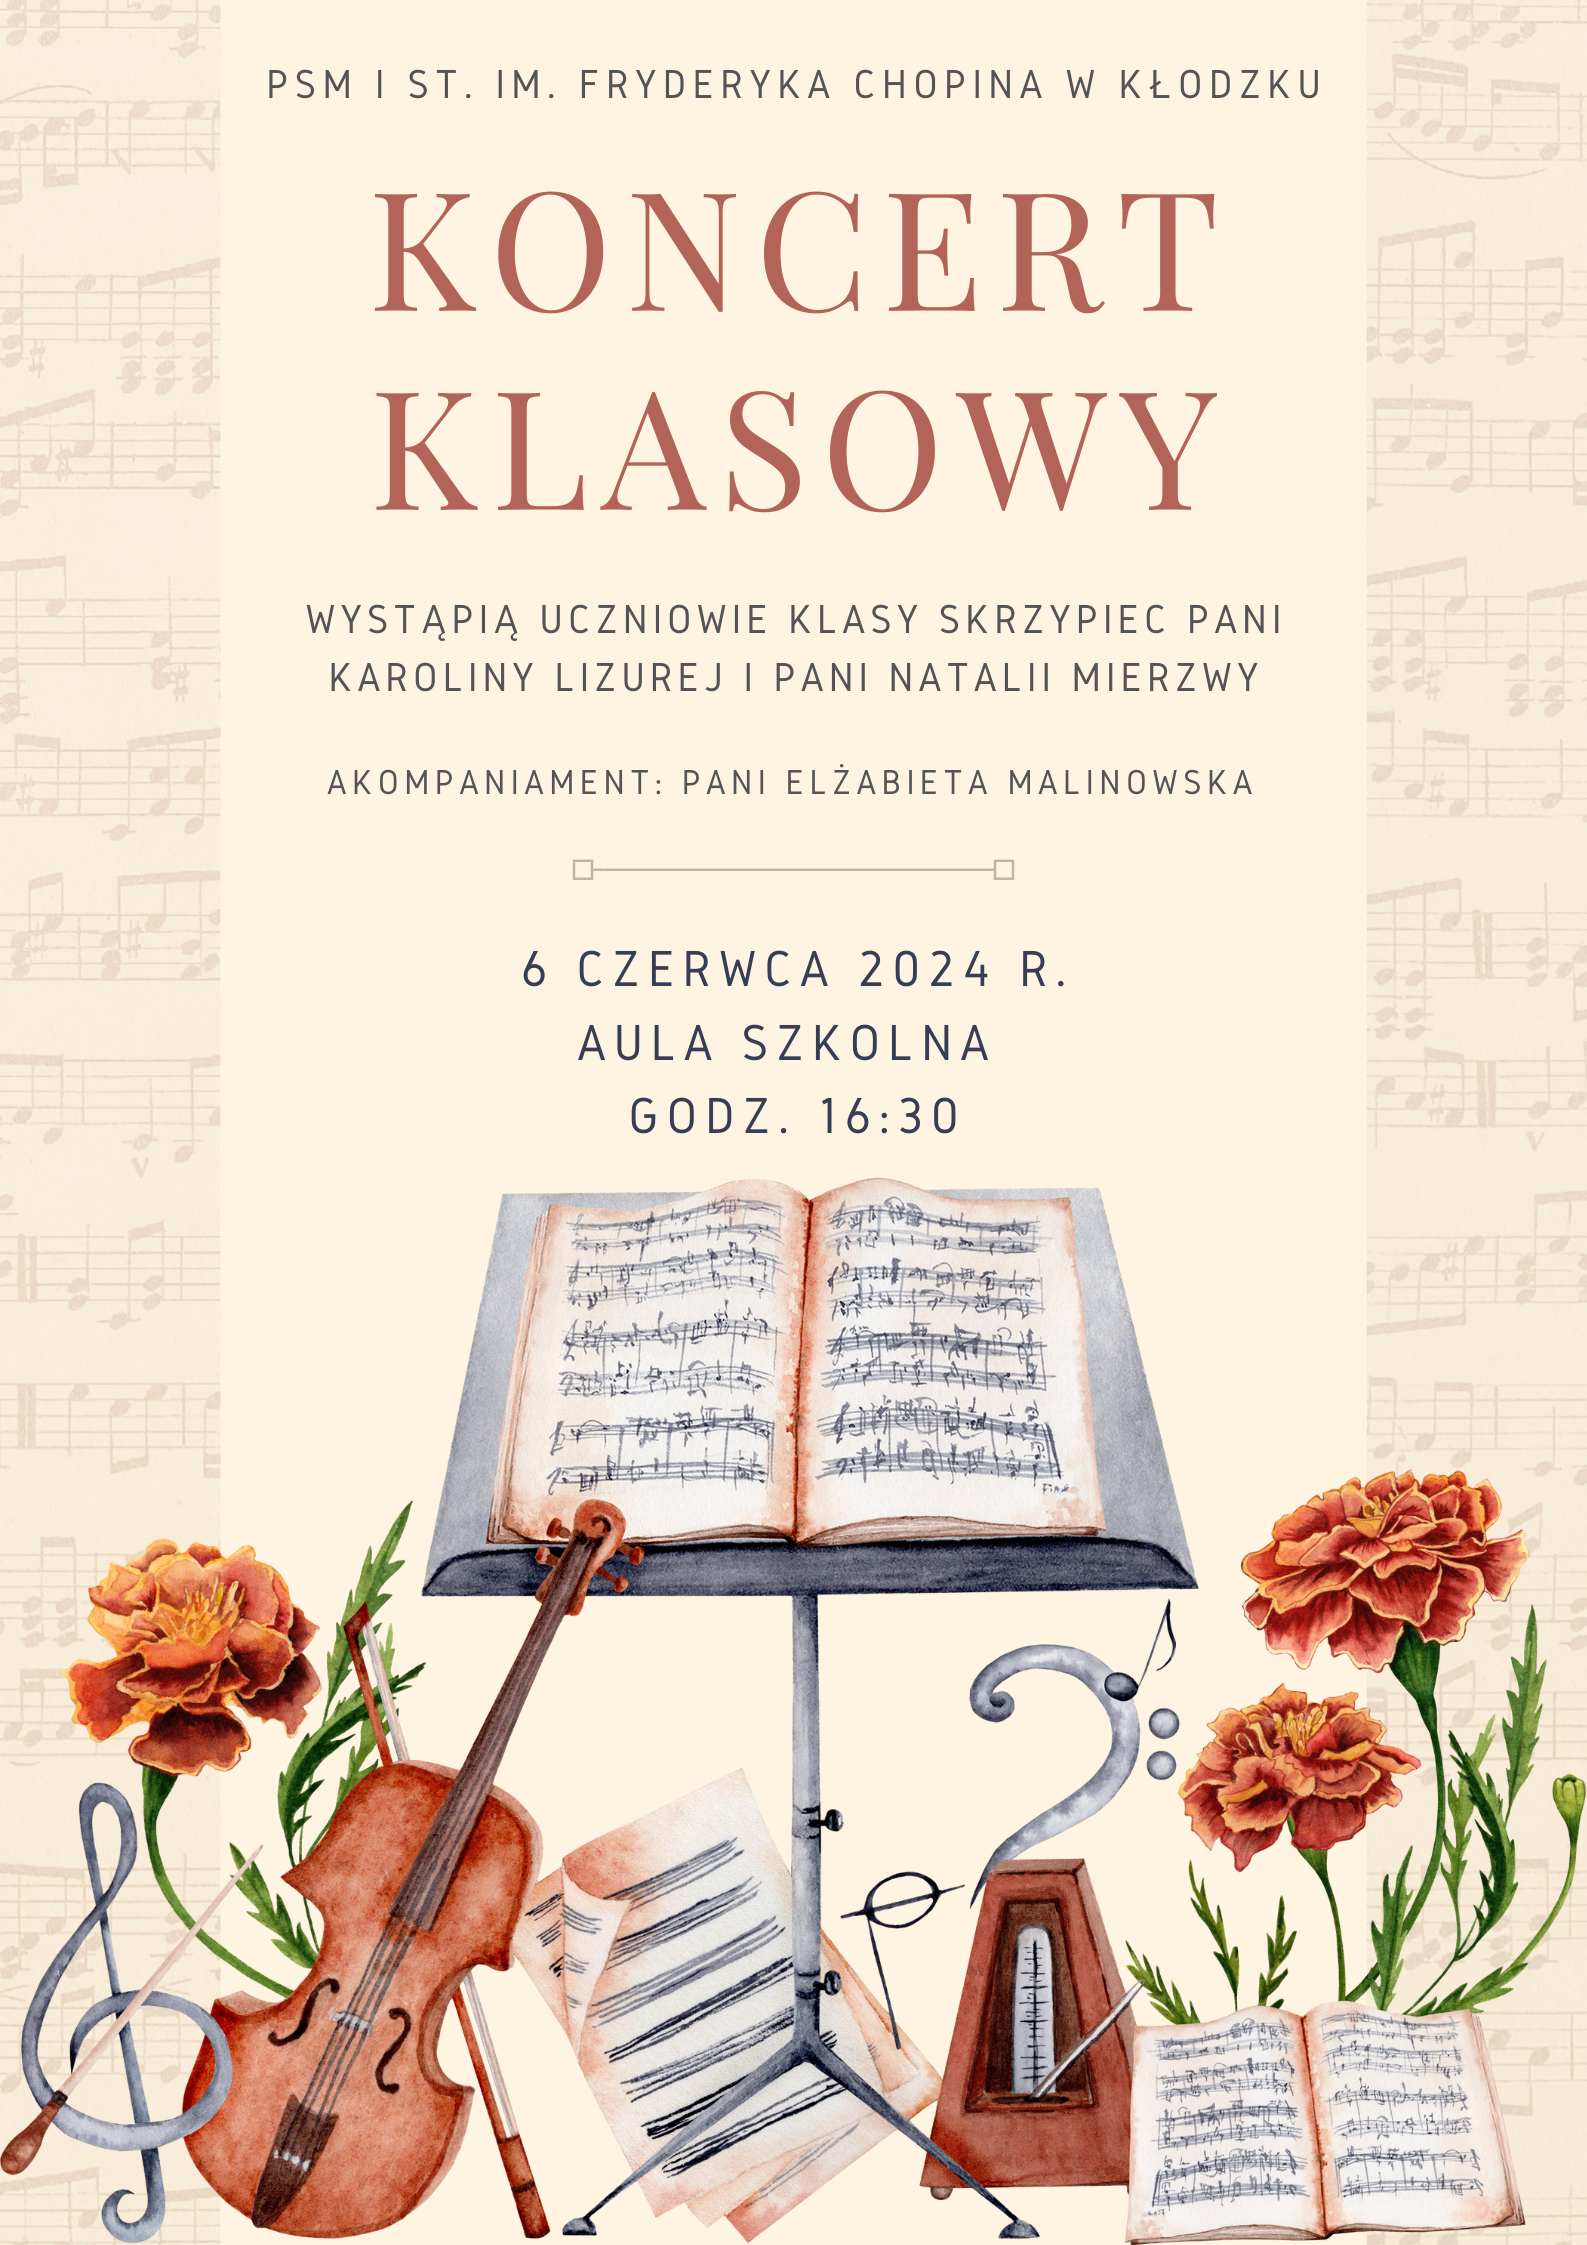 Plakat na kolorowym tle z grafiką skrzypiec u dołu plakatu oraz informacją tekstową dotyczącą koncertu uczniów klasy skrzypiec p. K. Lizurej i N. Mierzwy - 06 czerwca 2024 r.